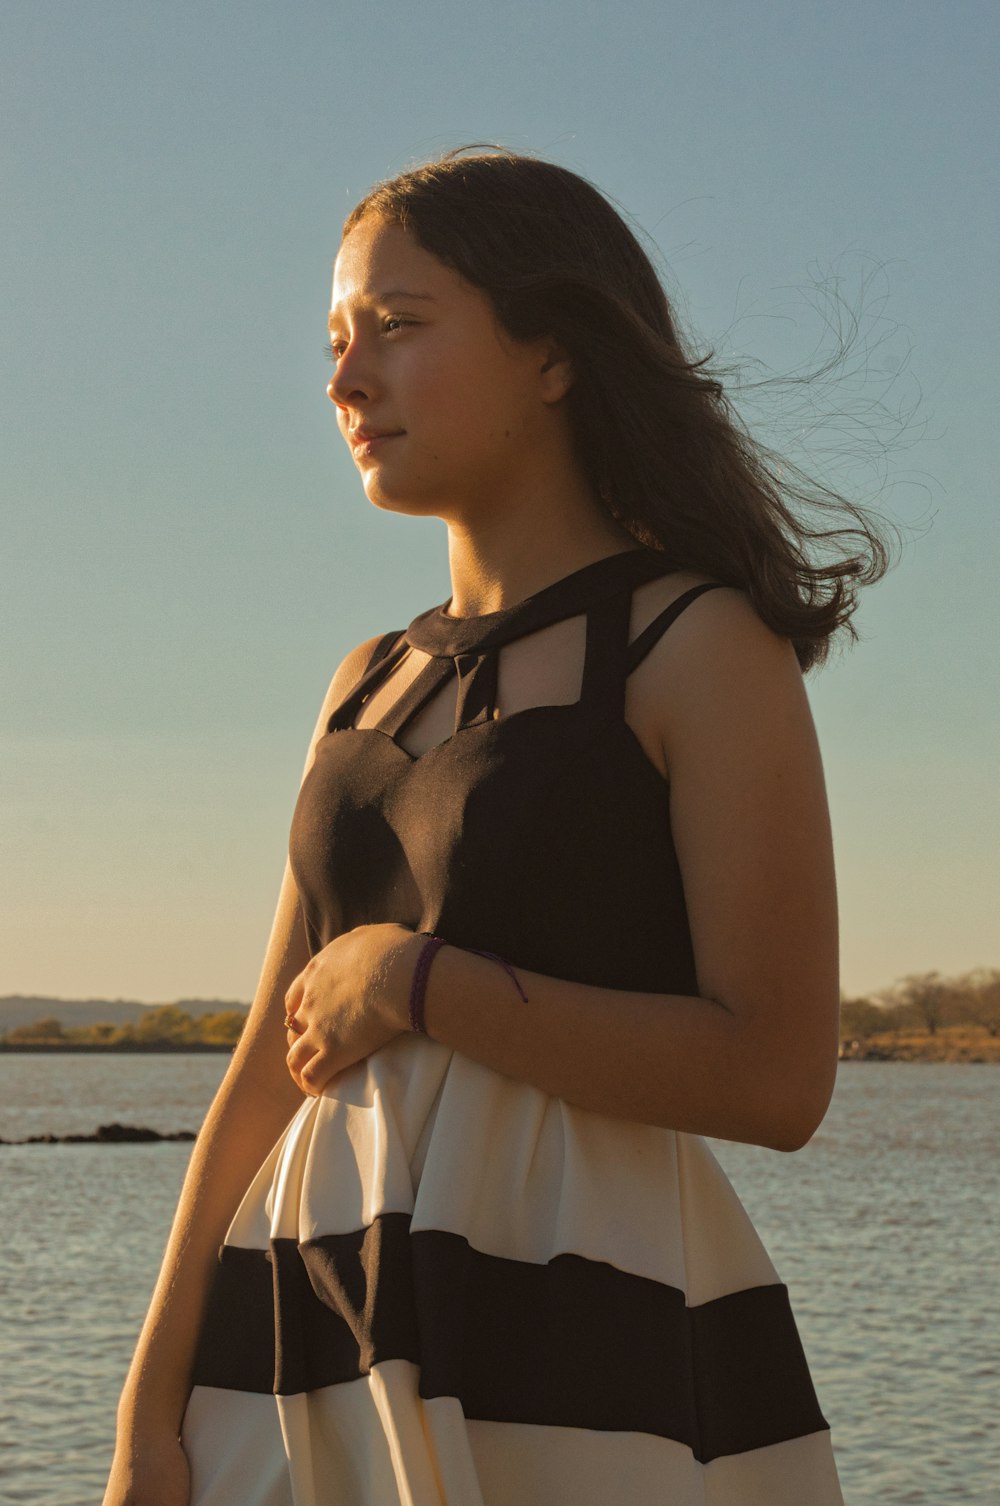 eine Frau in einem schwarz-weißen Kleid, die an einem Gewässer steht